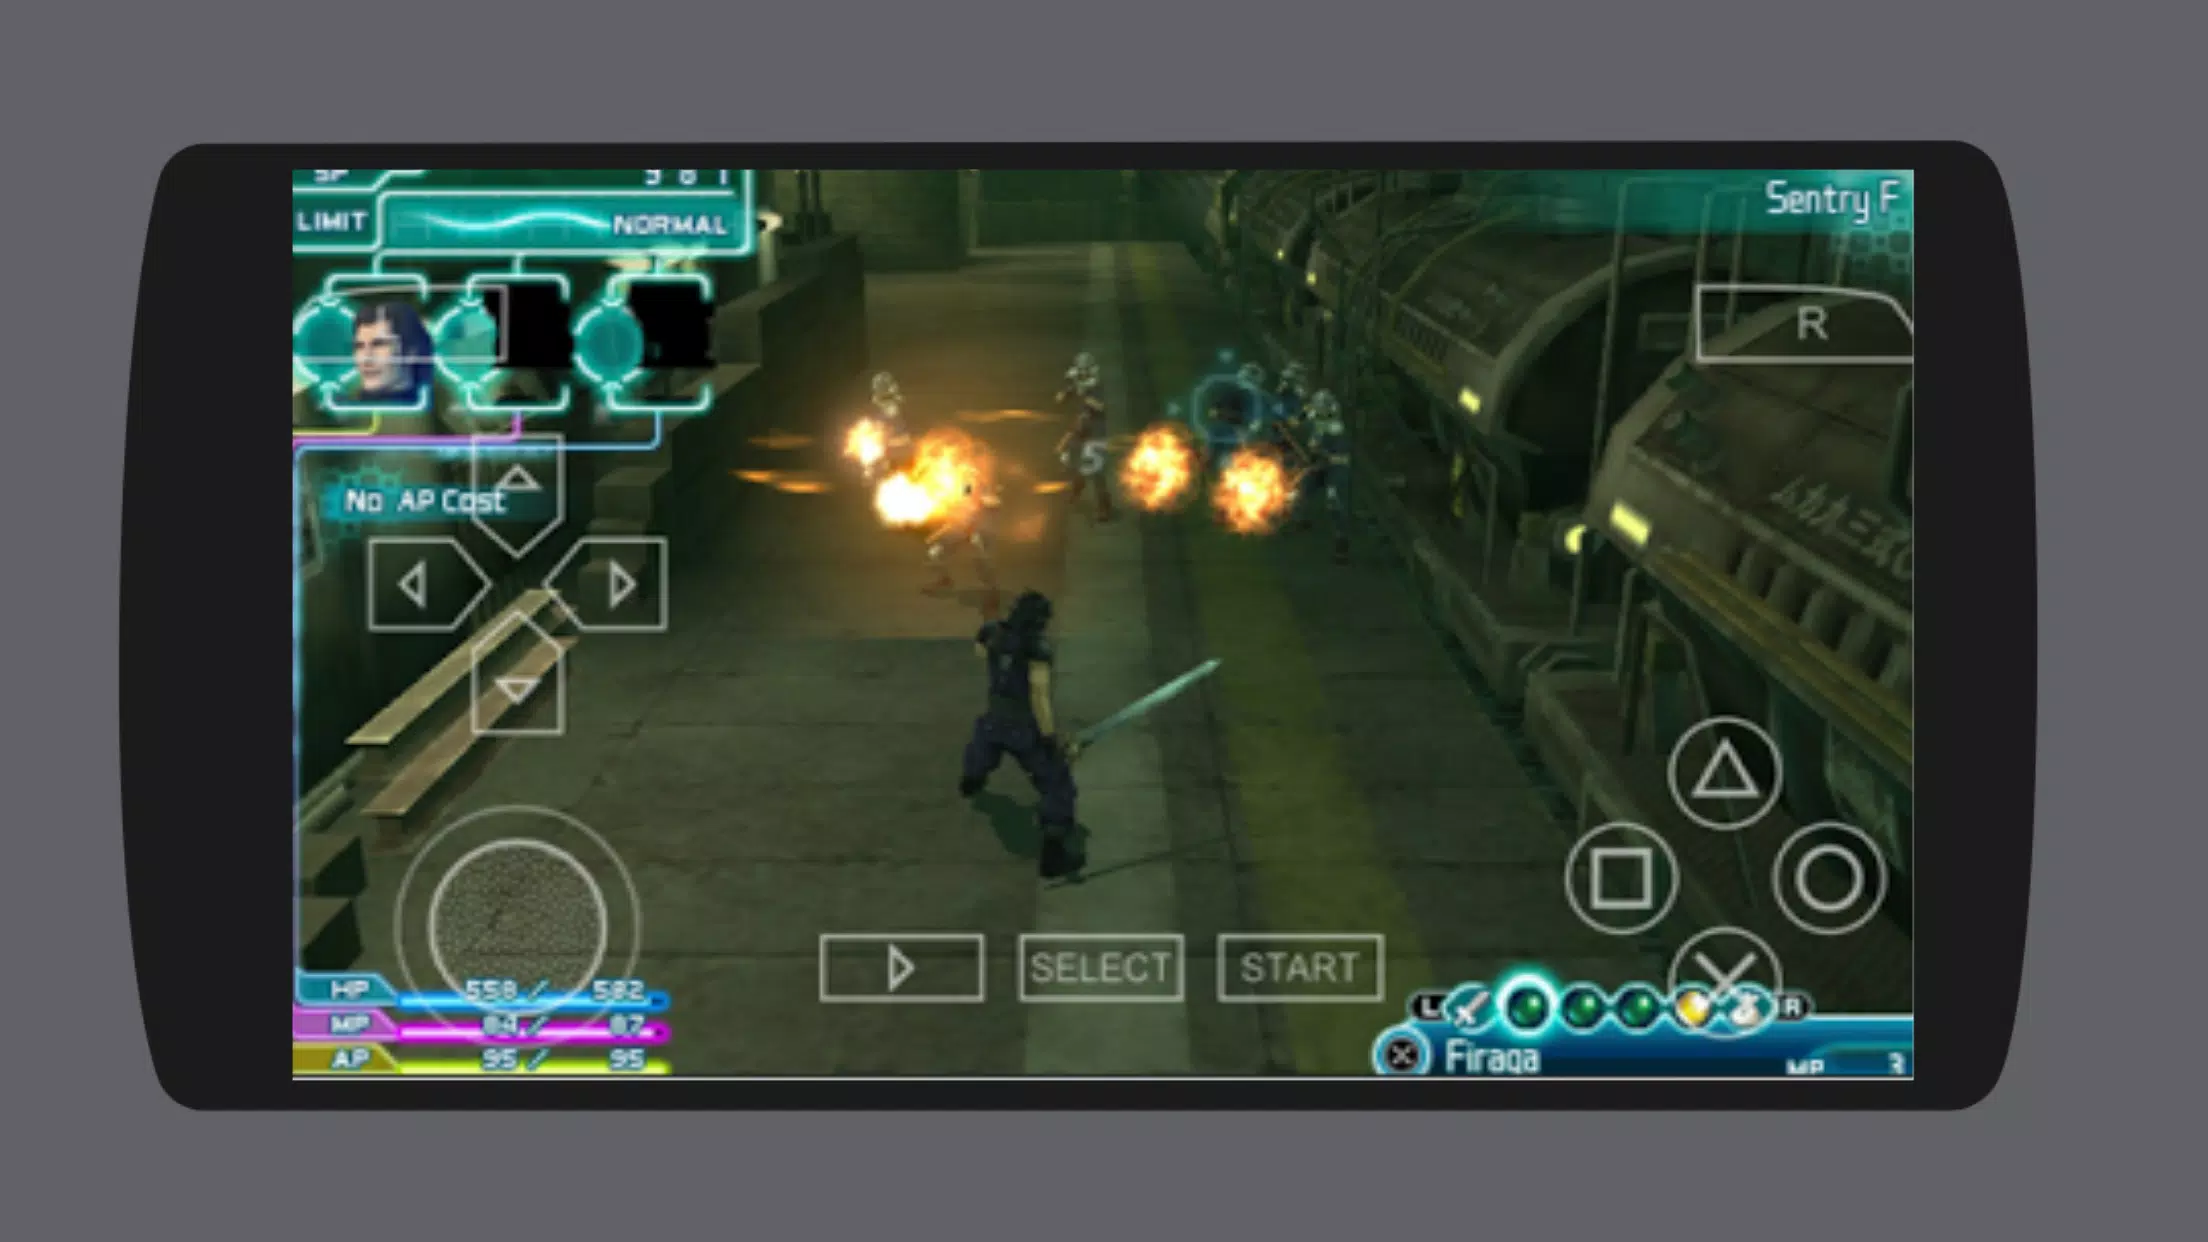 Dragonball Evolution - PSP Gameplay 1080p (PPSSPP) 